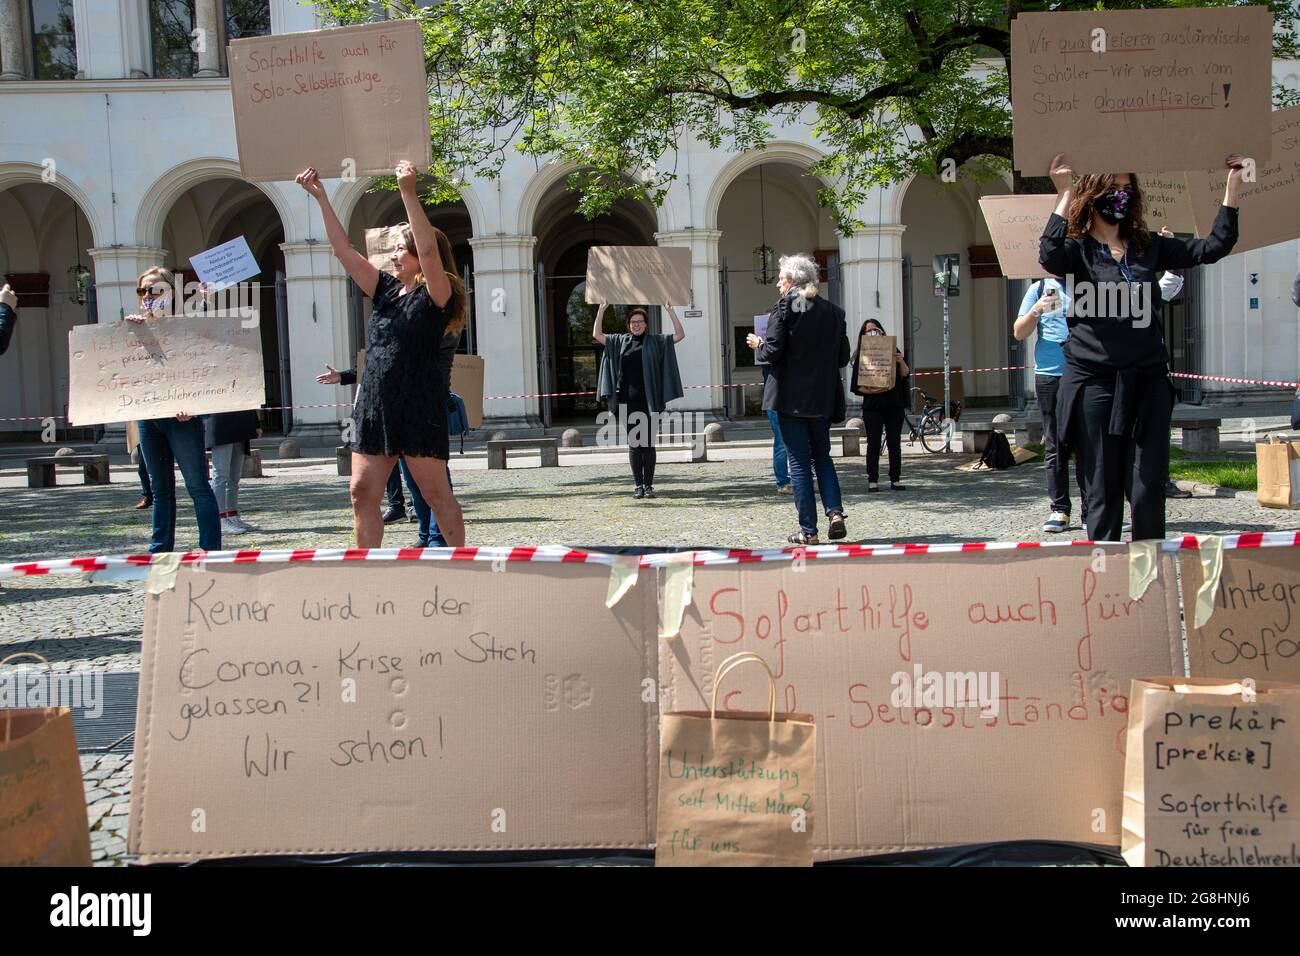 bei einer Protestaktion für mehr Unterstützung von Freiberuflern, Solo-Selbstständigen und Selbstständigen in der Corona-Krise auf dem Geschwister-Scholl-Platz am 16. Mai 2020 in München. (Photo by Alexander Pohl/Sipa USA) Stock Photo